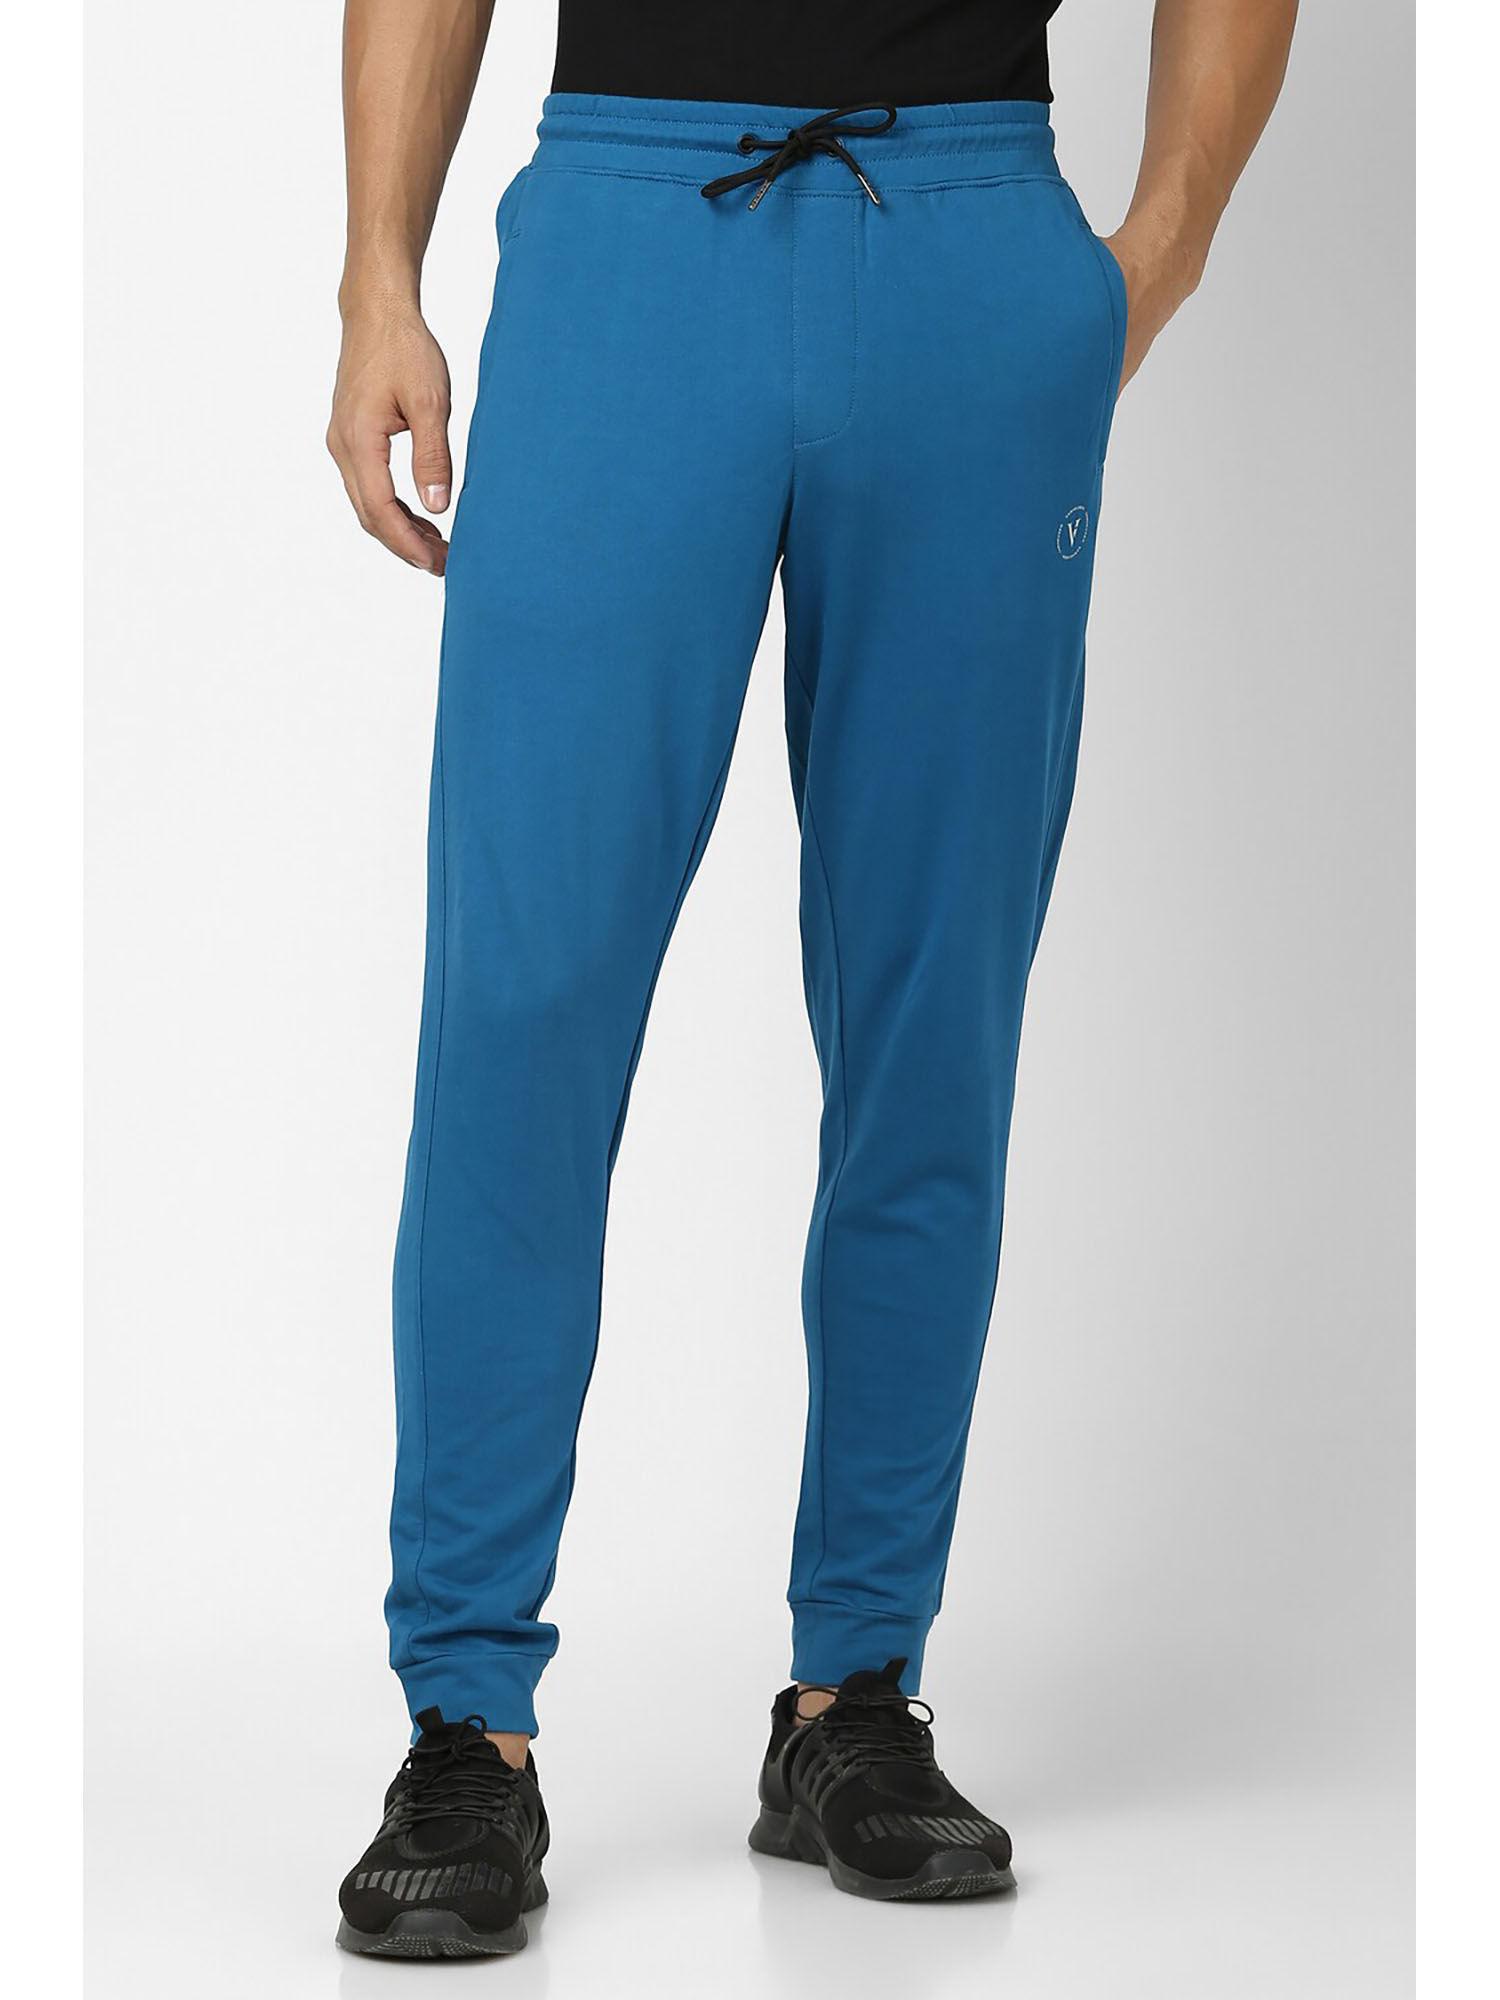 men blue solid casual joggers pants